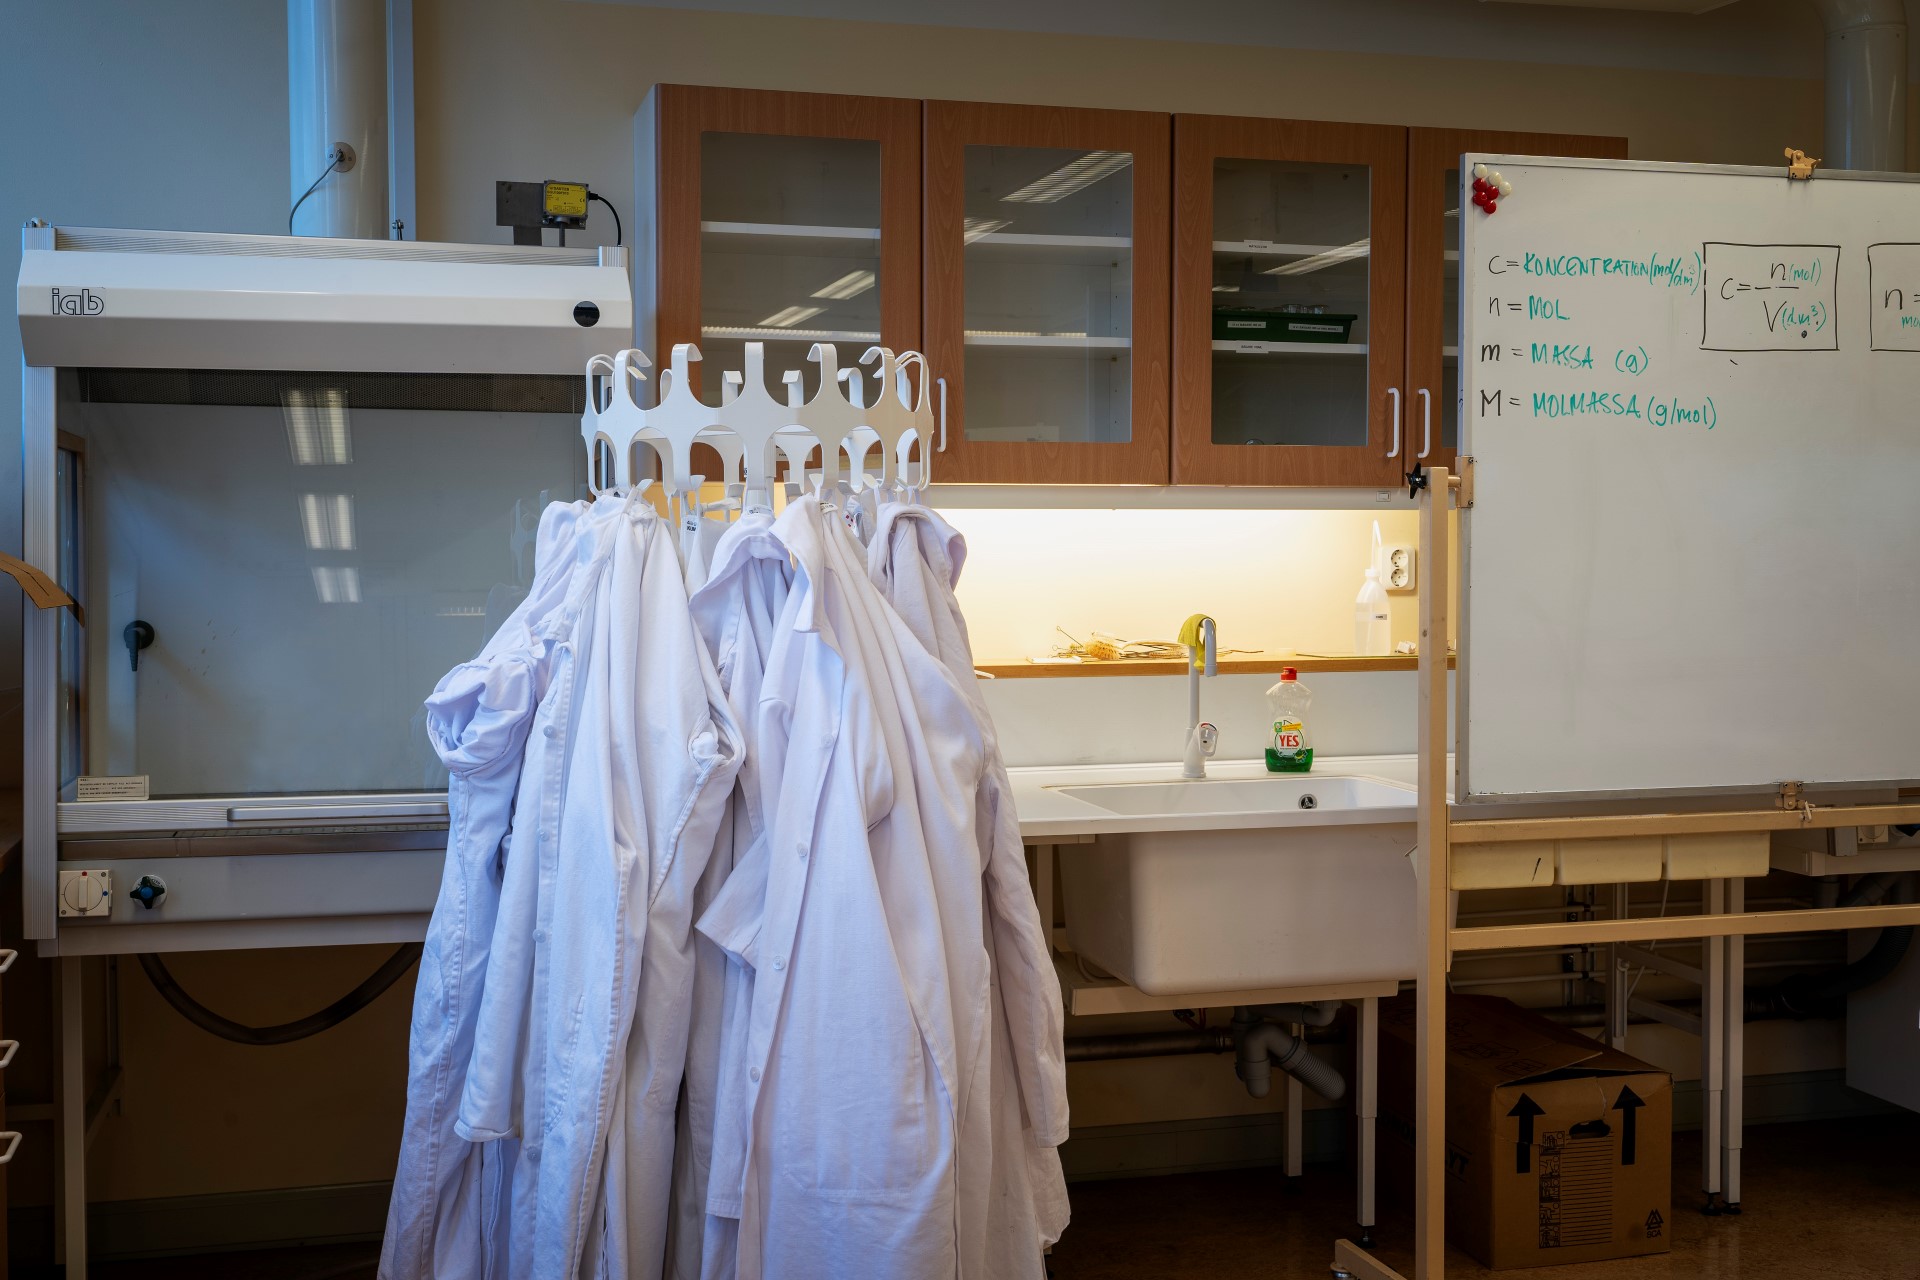 Labbrockar upphängda på krokar i en labbsal på Thorildplans gymnasium